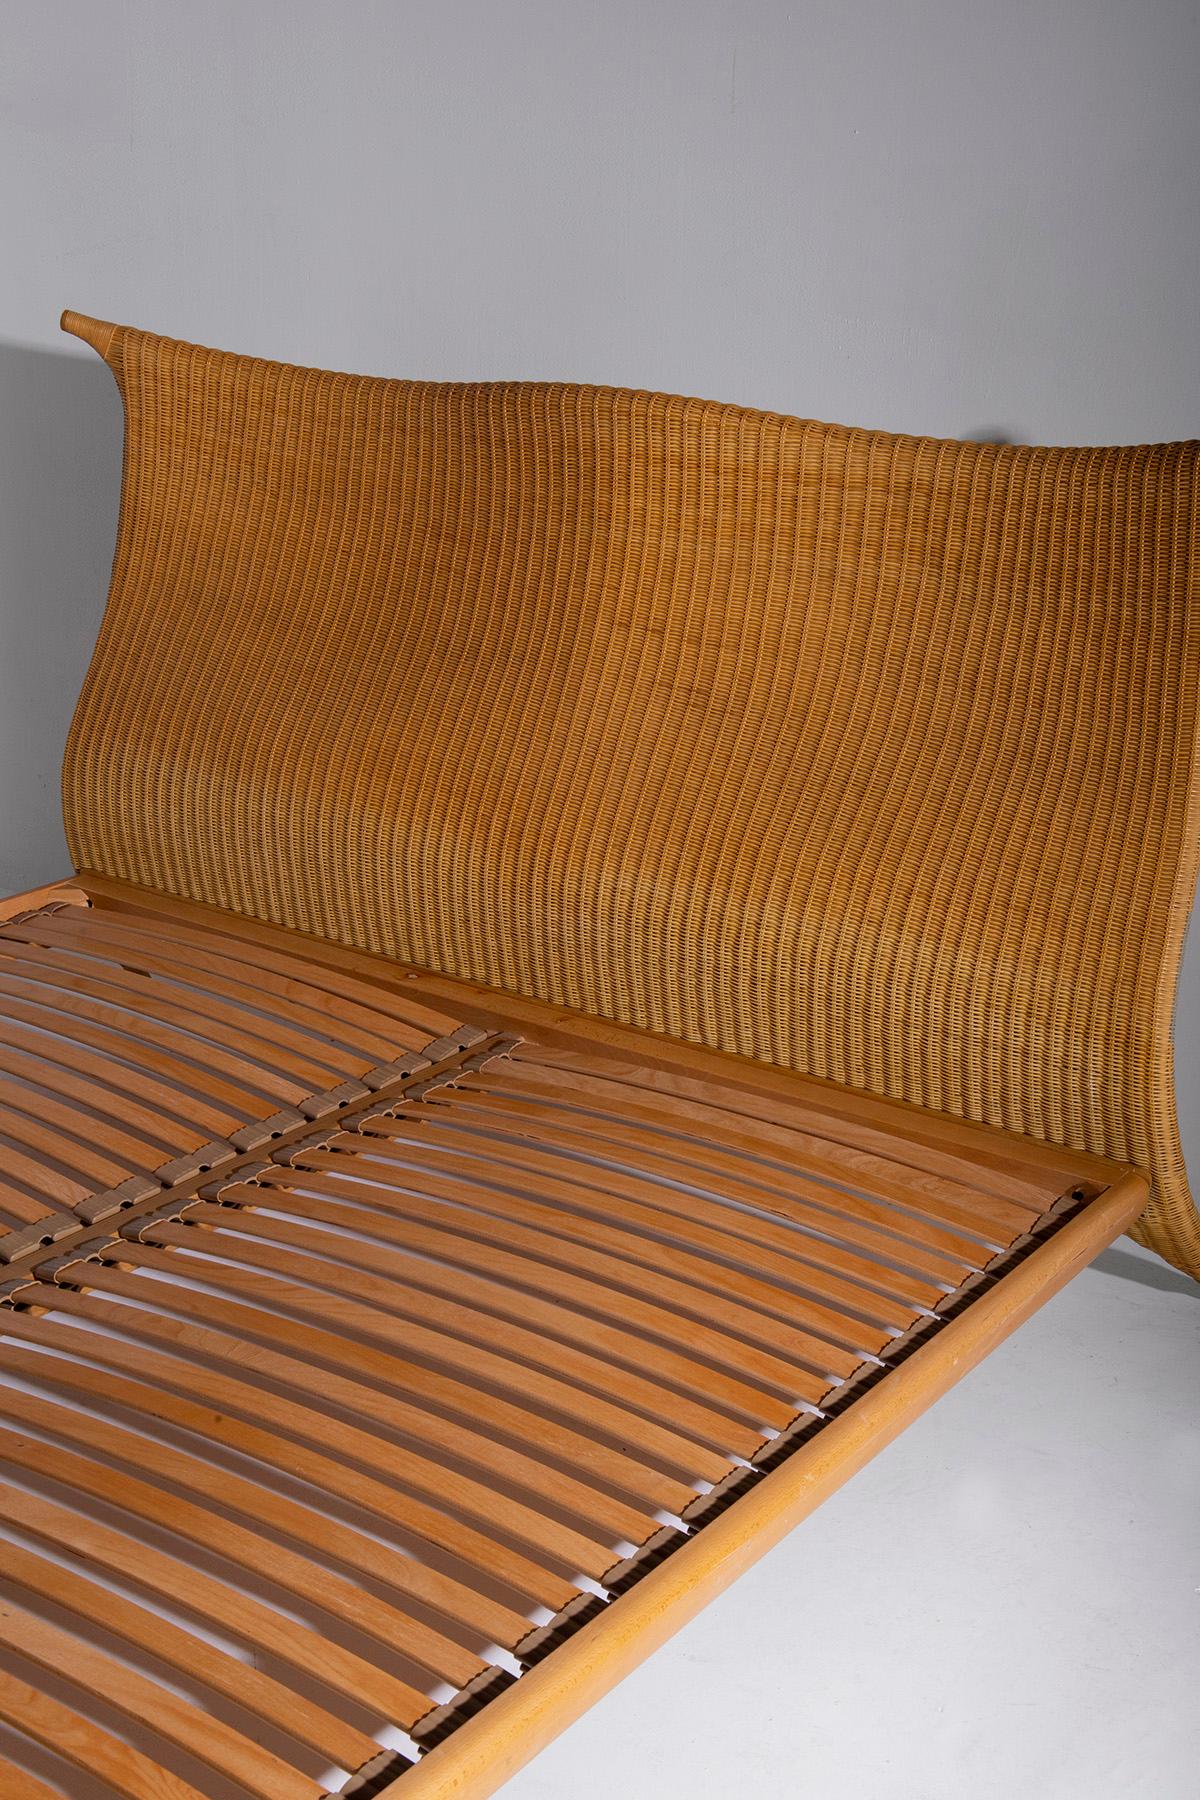 Italian rattan bed by PierAntonio Bonacina, with label 12